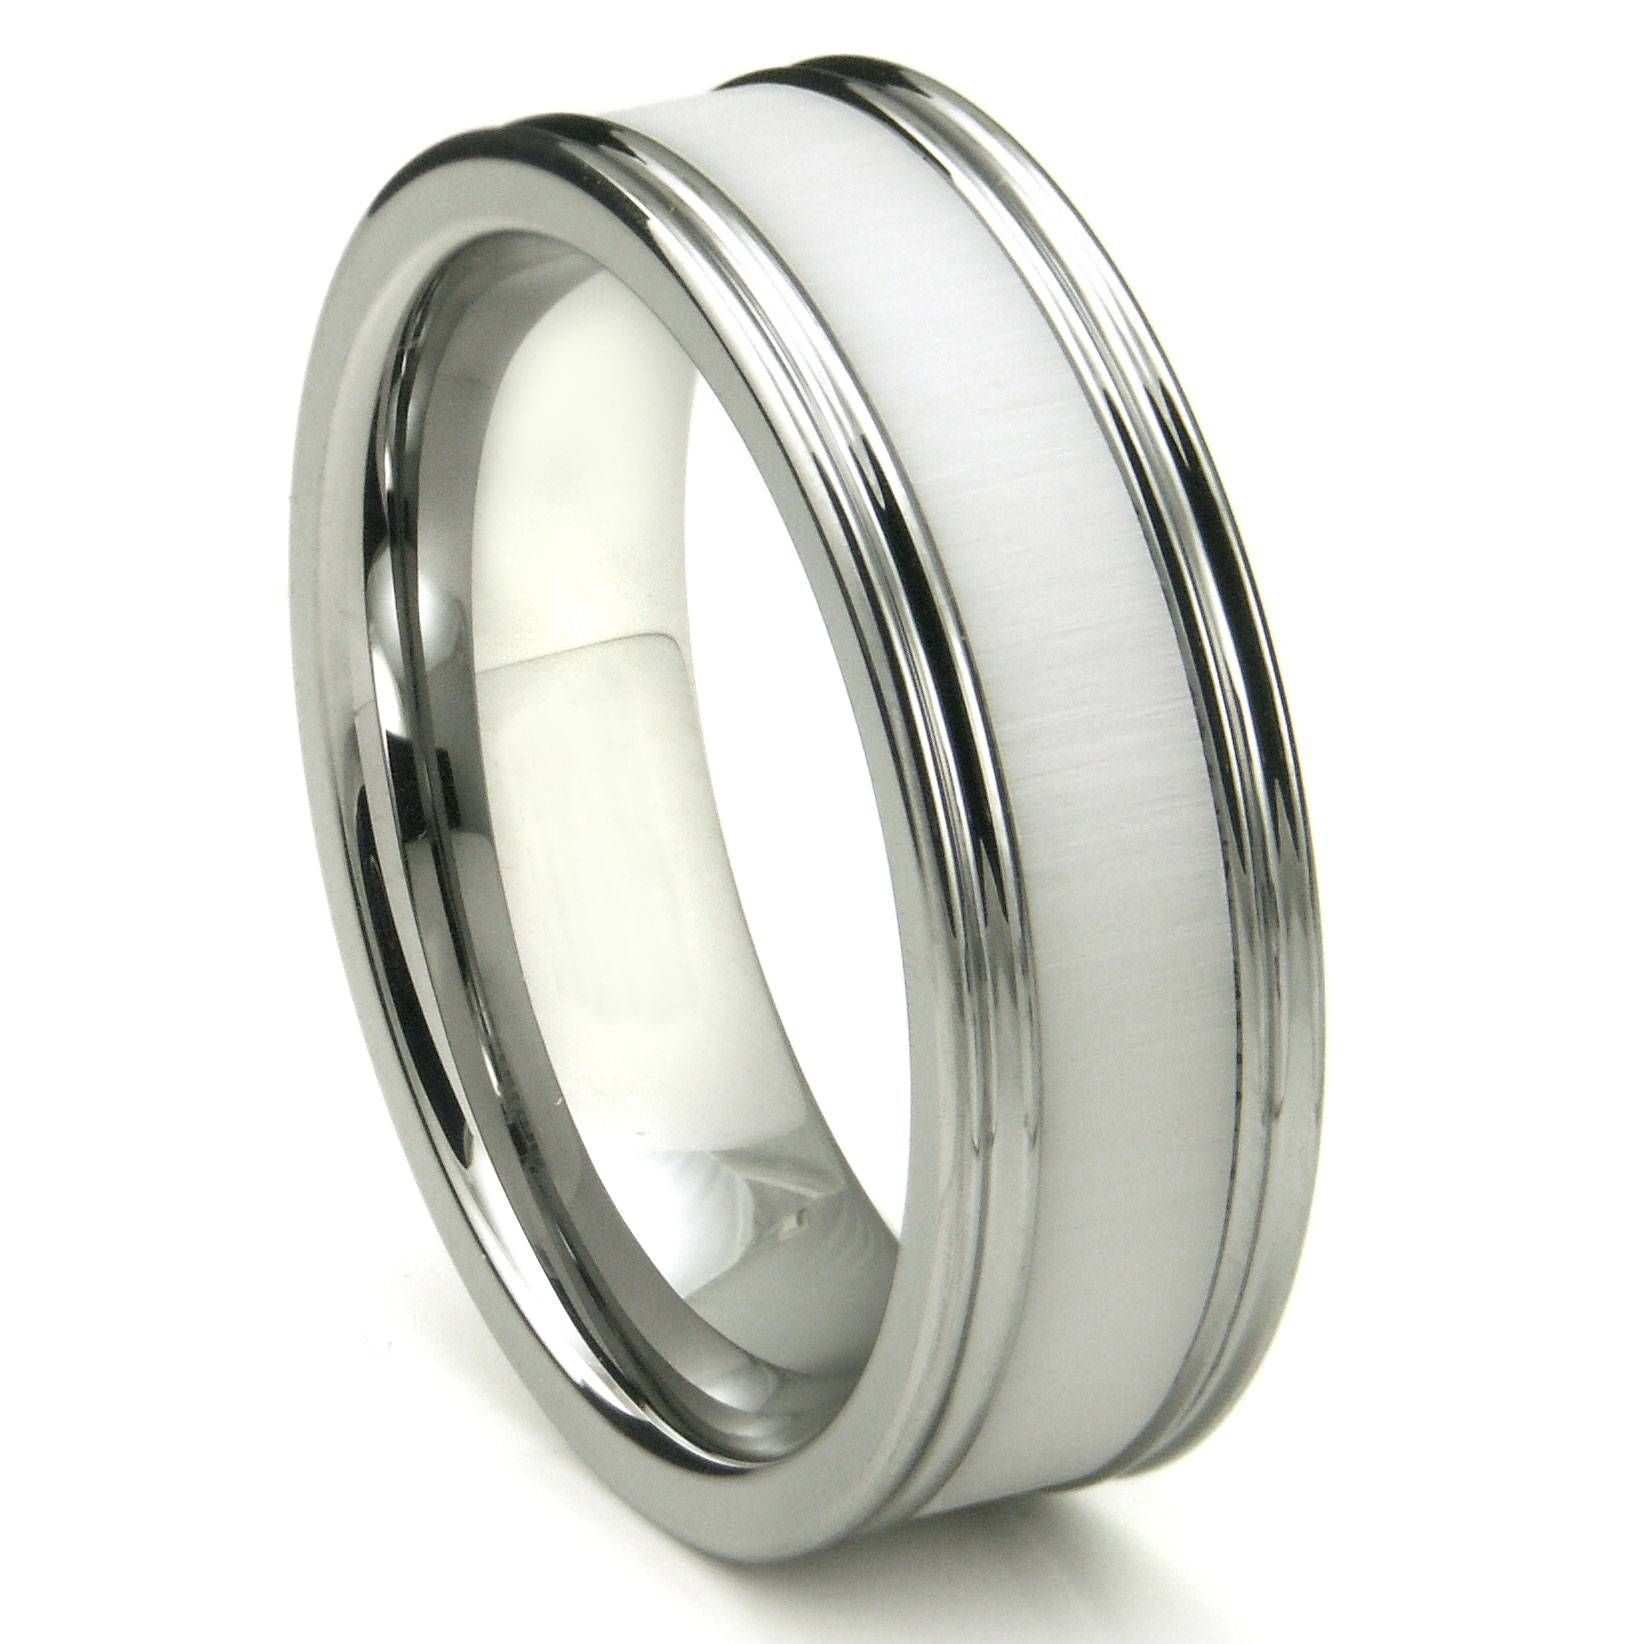 Tungsten Carbide White Ceramic Inlay Wedding Band Ring W Pertaining To White Ceramic Wedding Bands (View 1 of 15)